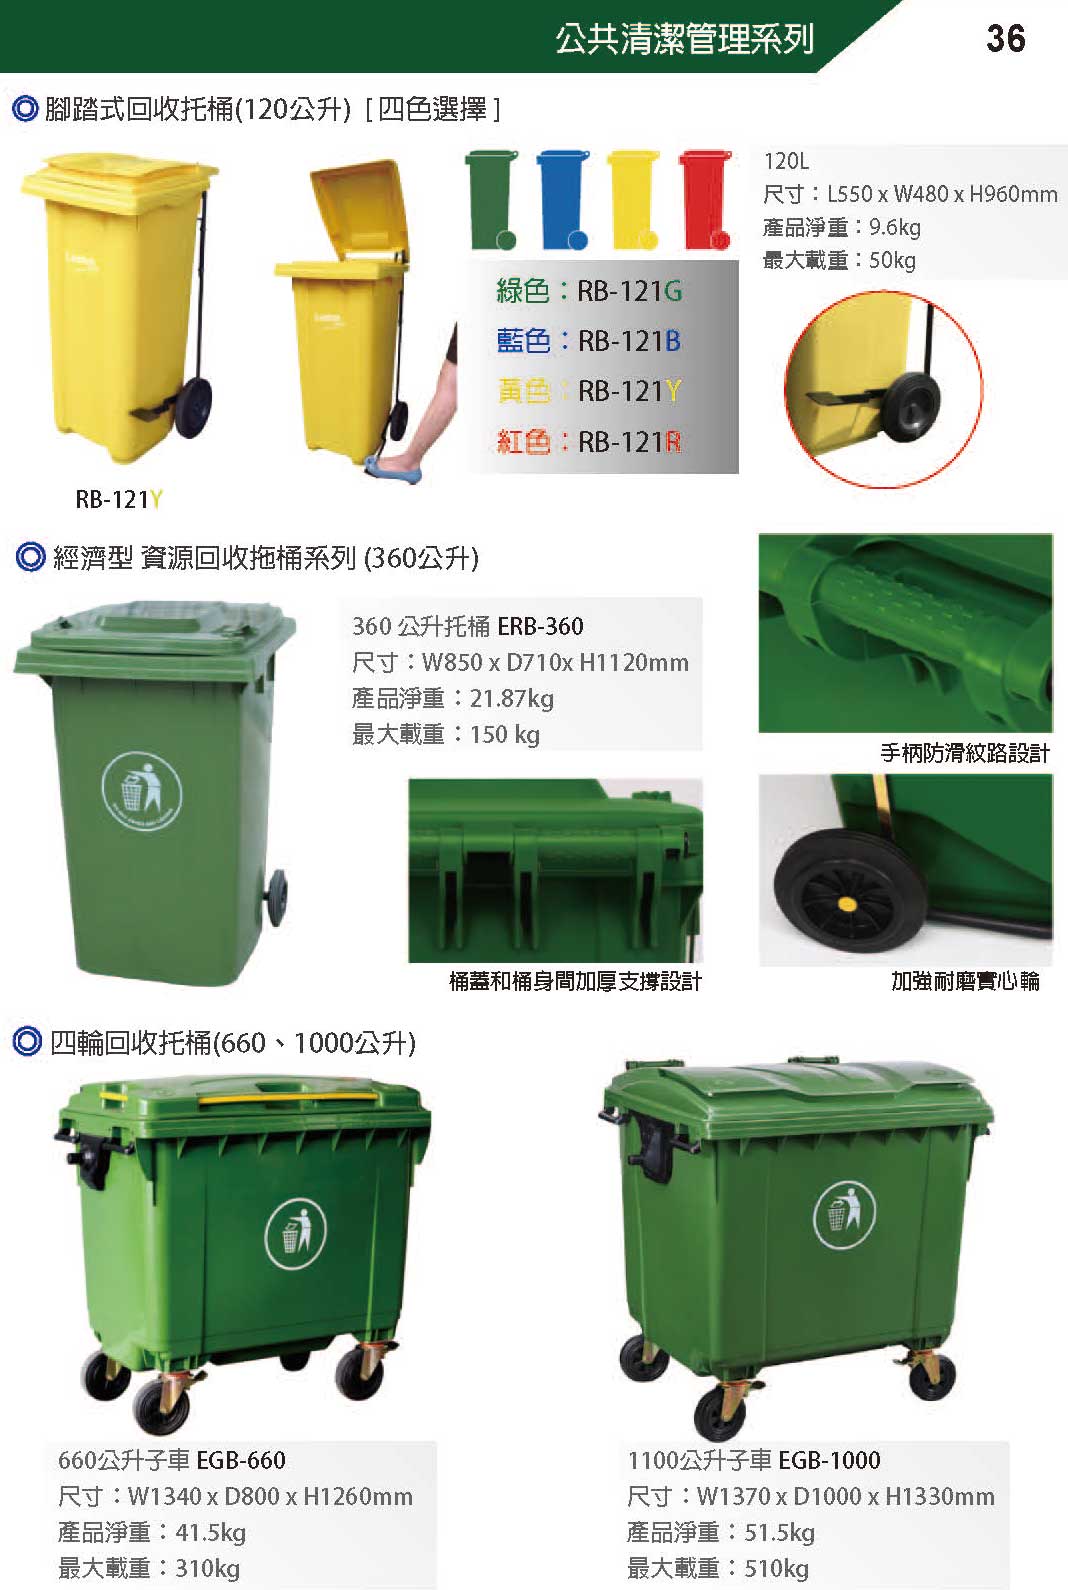 ERB-360 經濟型回收拖桶(360公升)